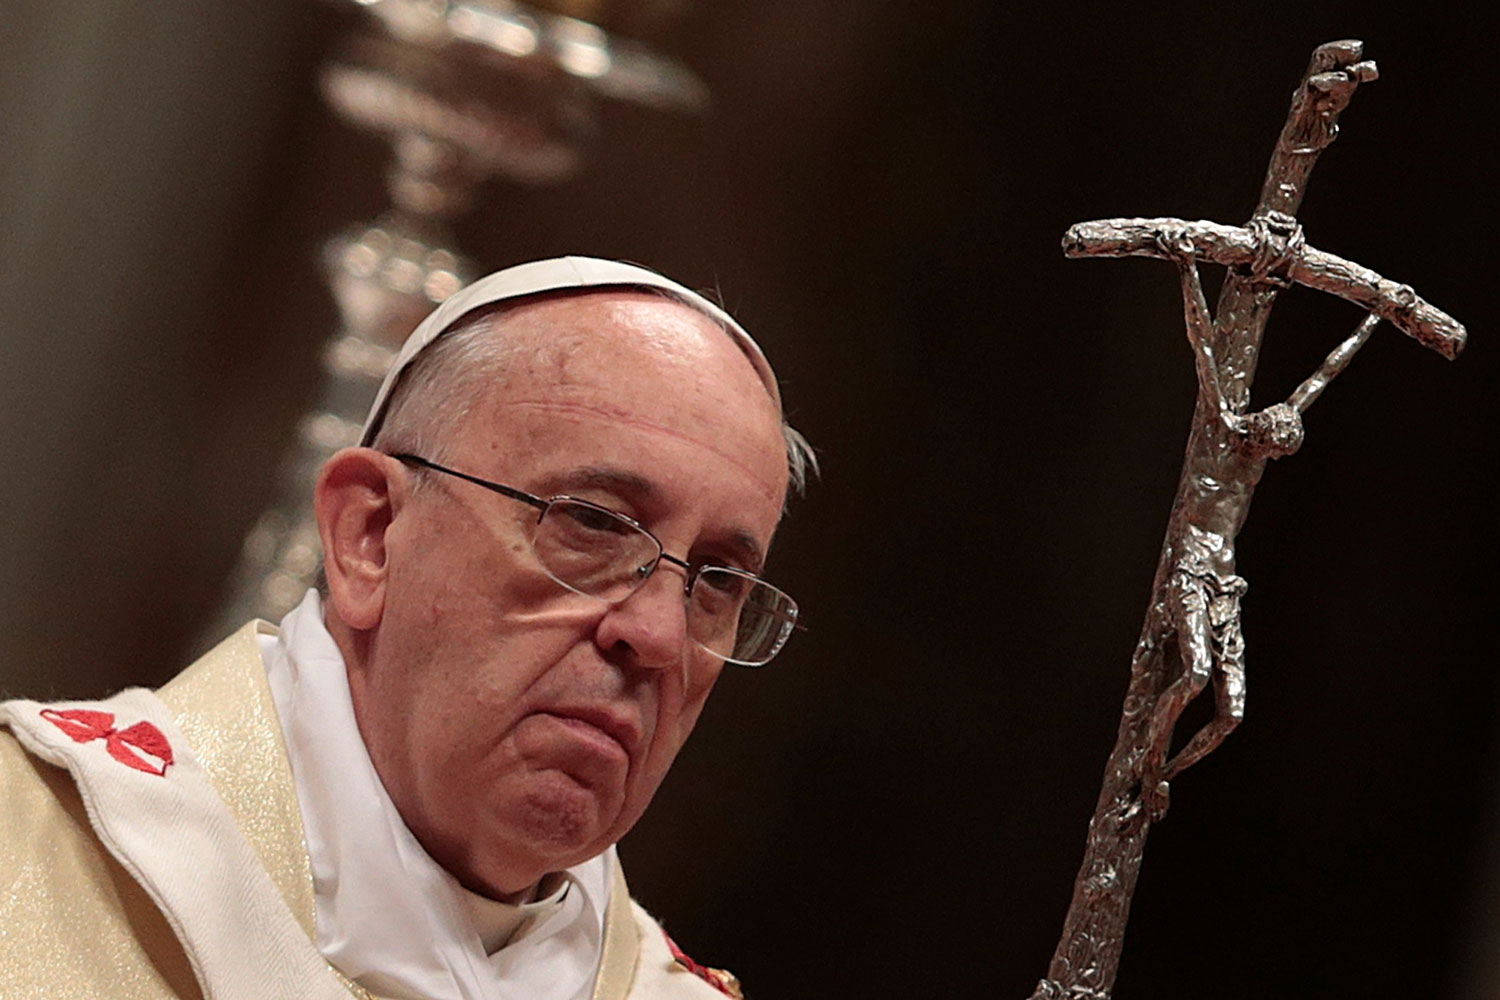 La mafia quiere matar al Papa Francisco según prestigioso fiscal italiano